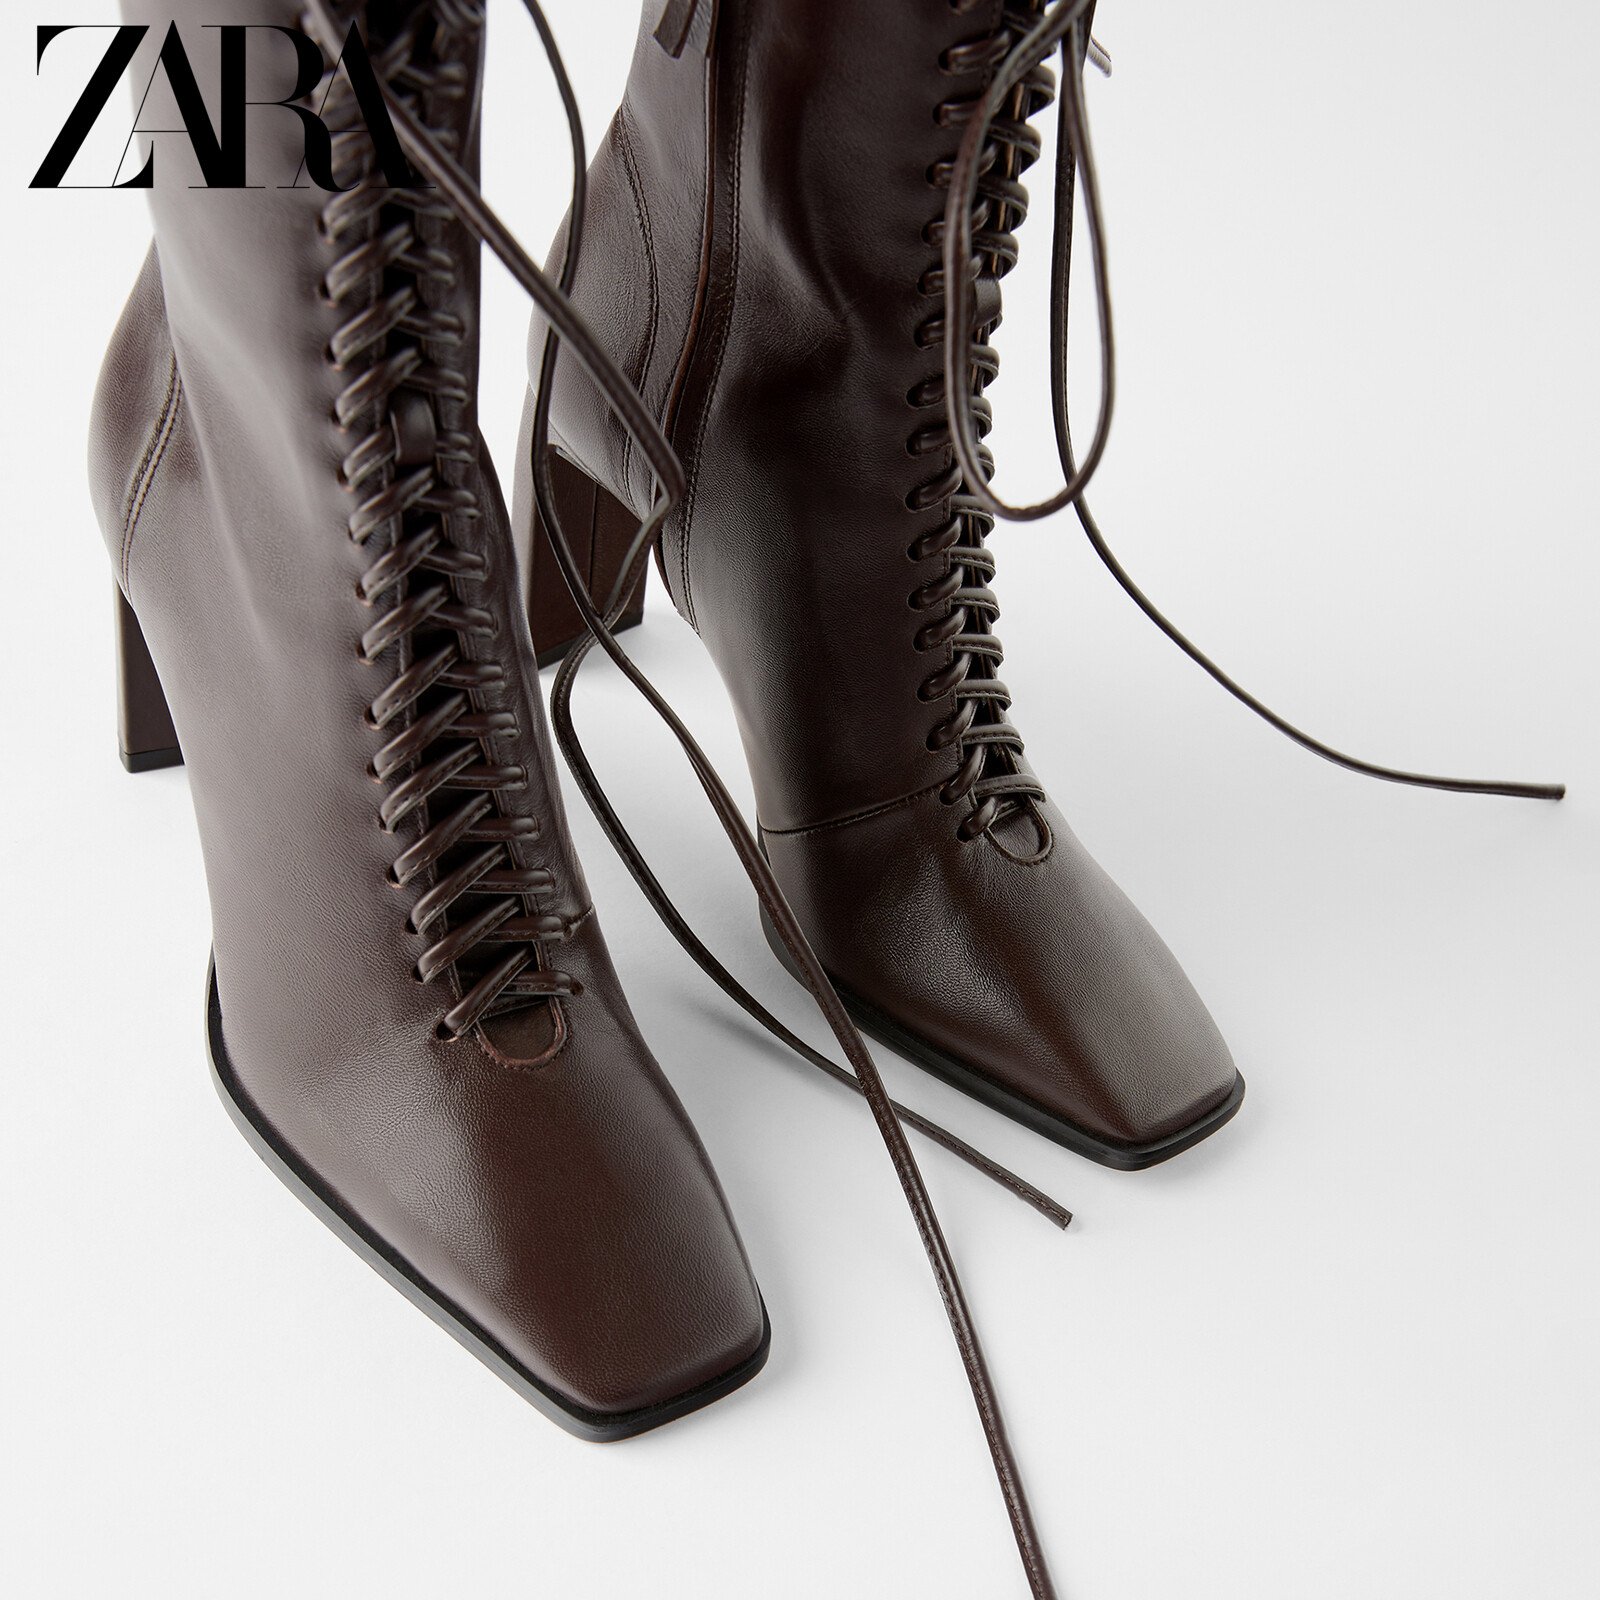 Кожаная шнуровка купить. Zara ботинки на шнуровке. Сапоги Эконика на шнуровке. Ботильоны Zara 2021.